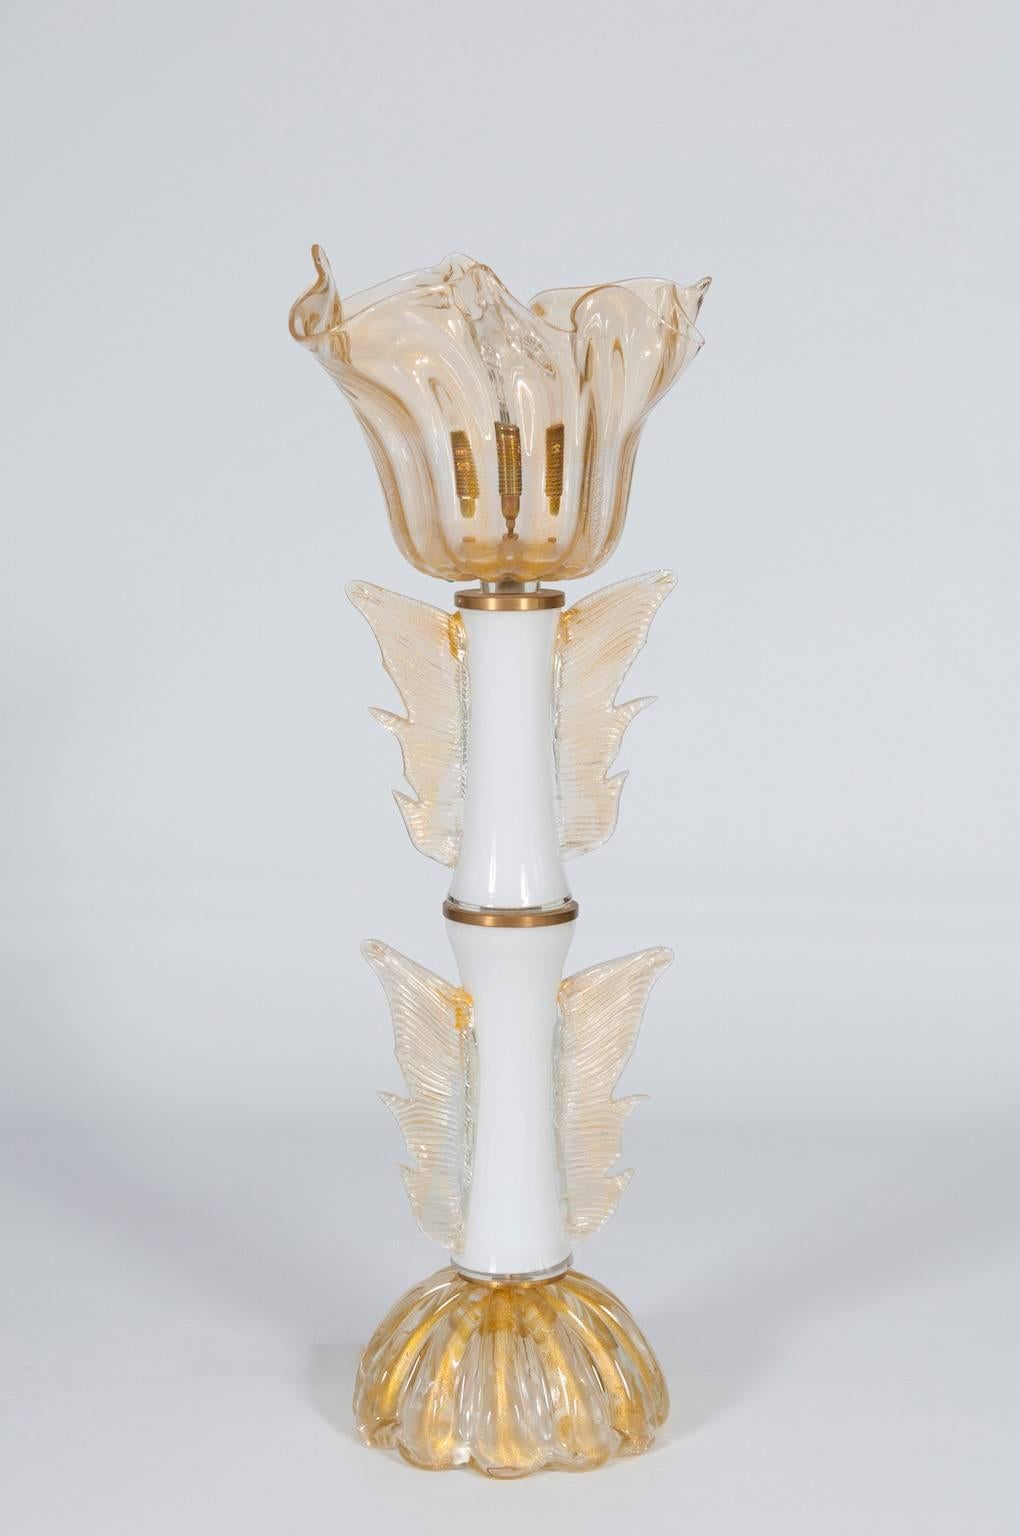 Fantastique, lampe de table vénitienne italienne, verre soufflé de Murano, or blanc 24-K et laiton, années 1970.
Le masterpiec est composé d'une tige principale avec deux cylindres en verre de Murano blanc et ayant une paire d'ailes en or. Au